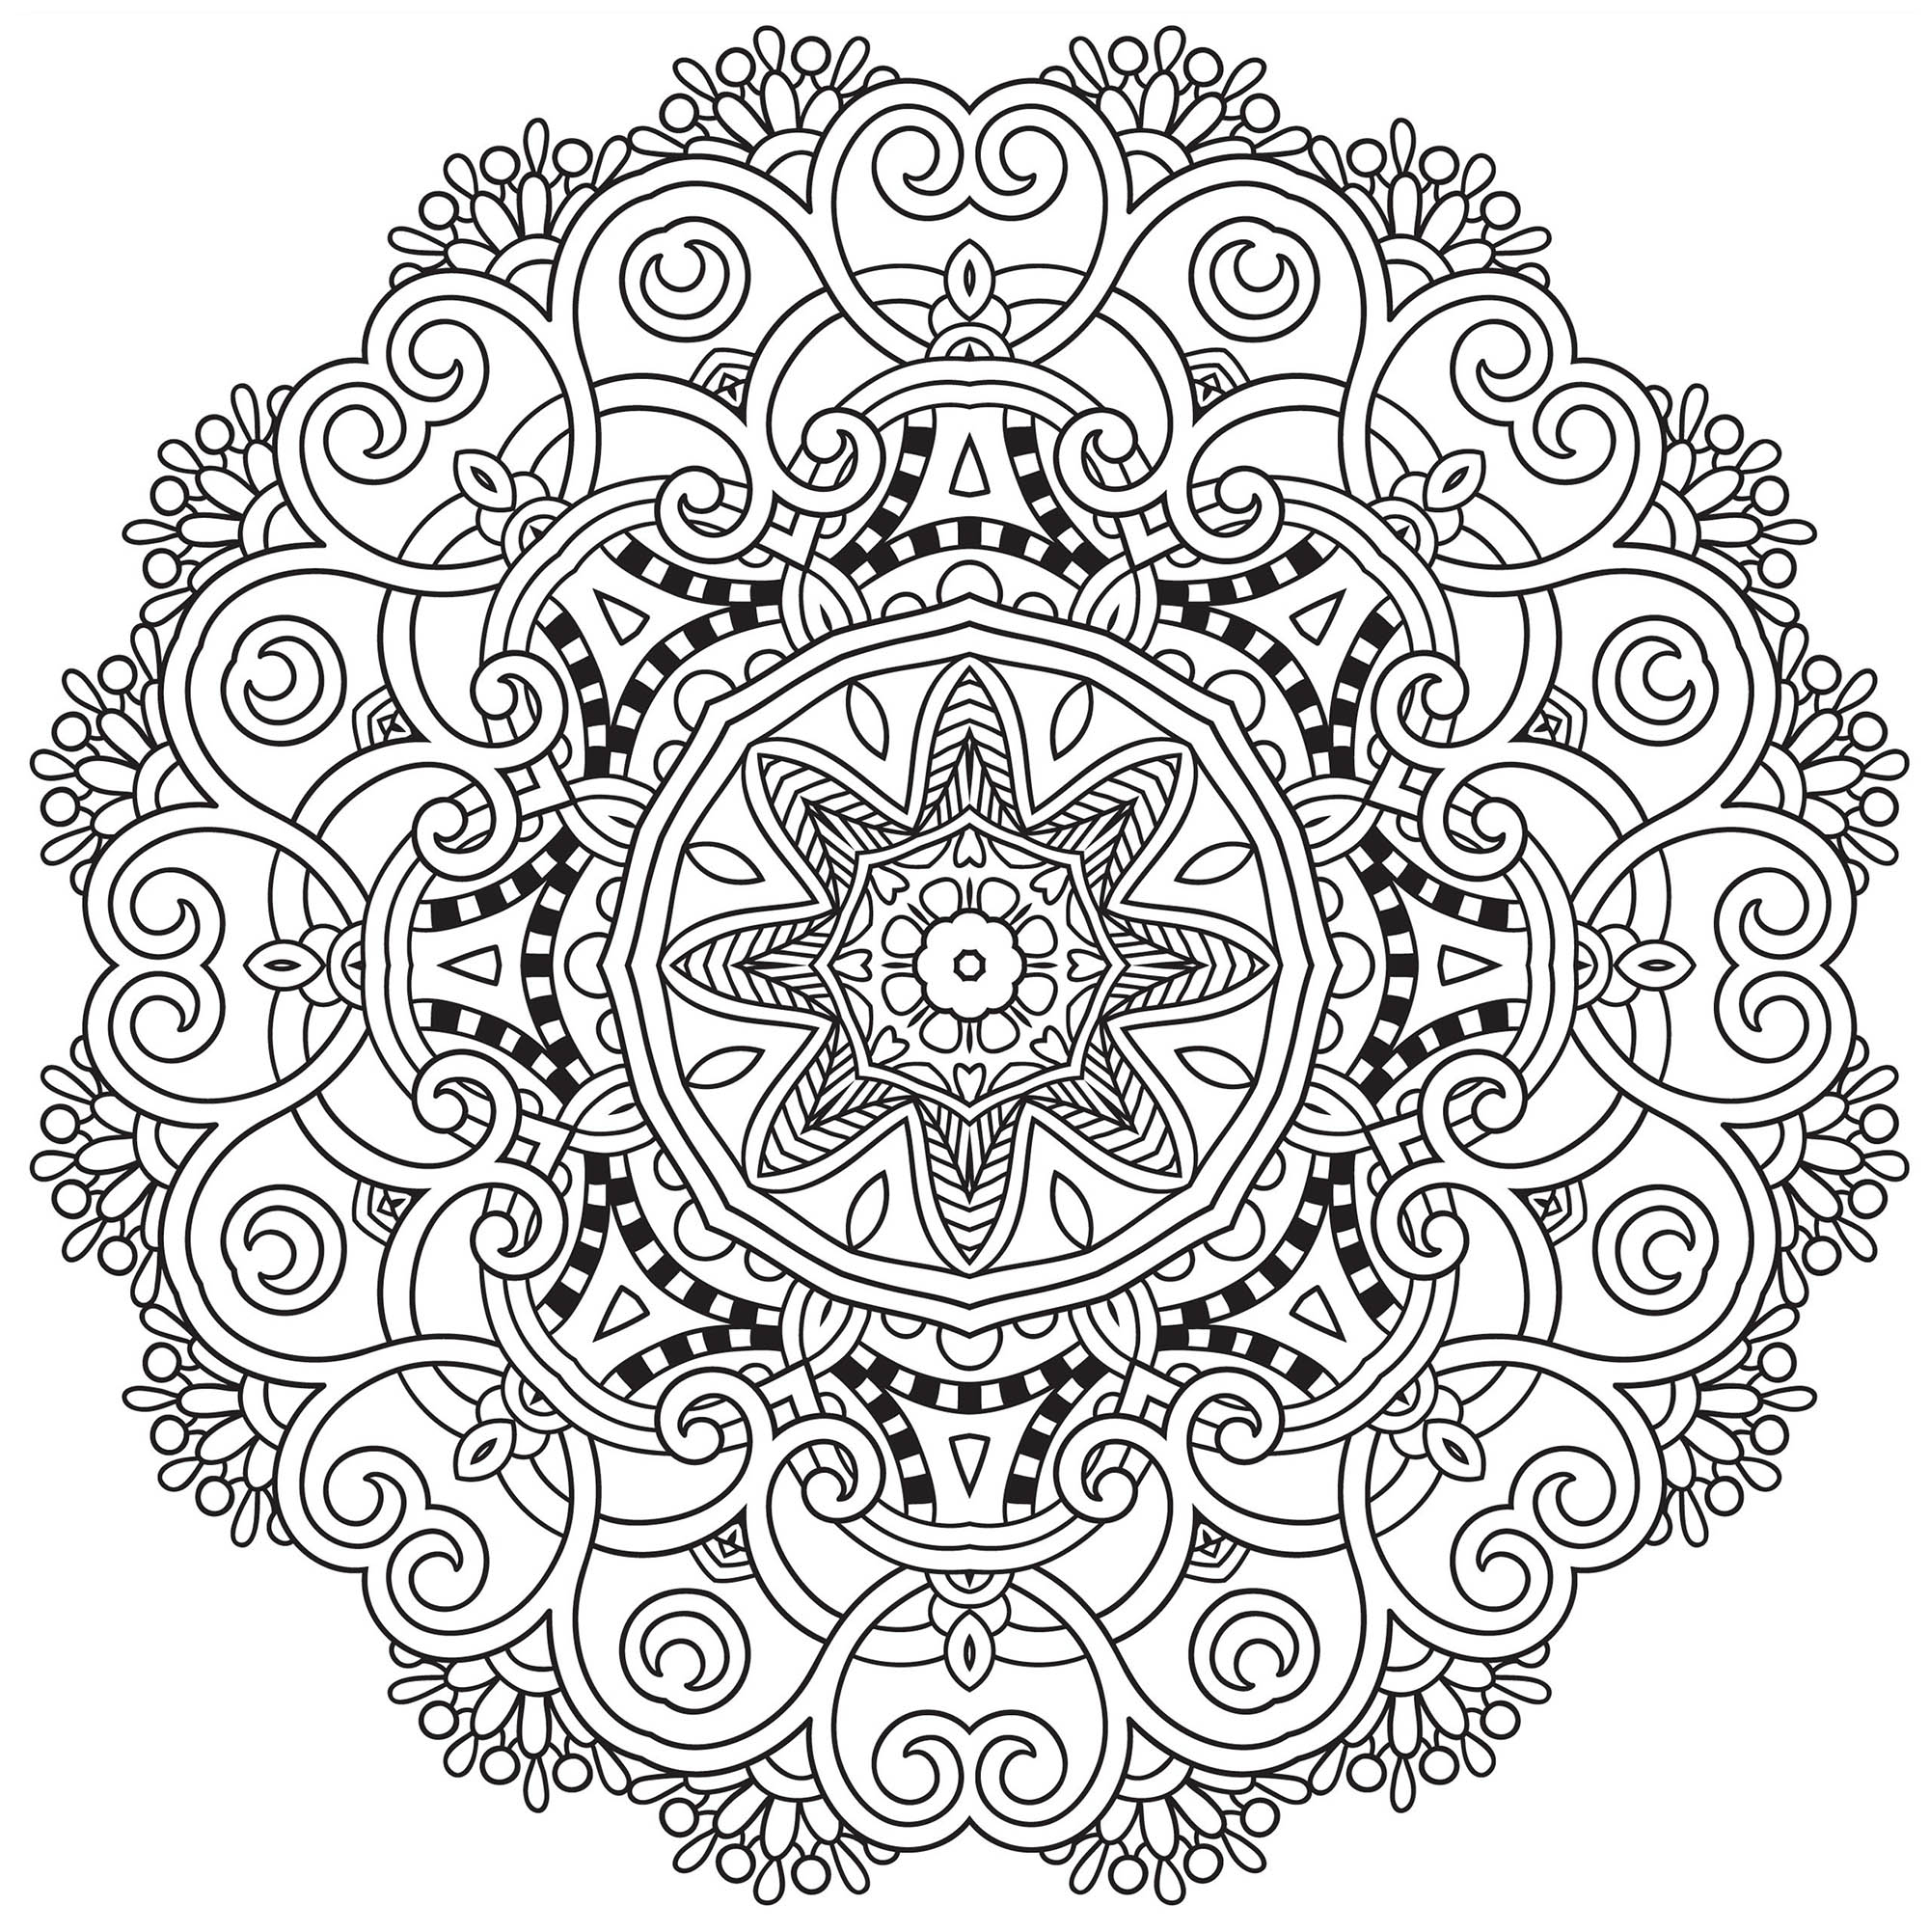 Un Mandala 'Harmonie fleurie' assez difficile à colorier, parfait si vous aimez mettre en couleur de petites zones, et si vous aimez les détails variés.